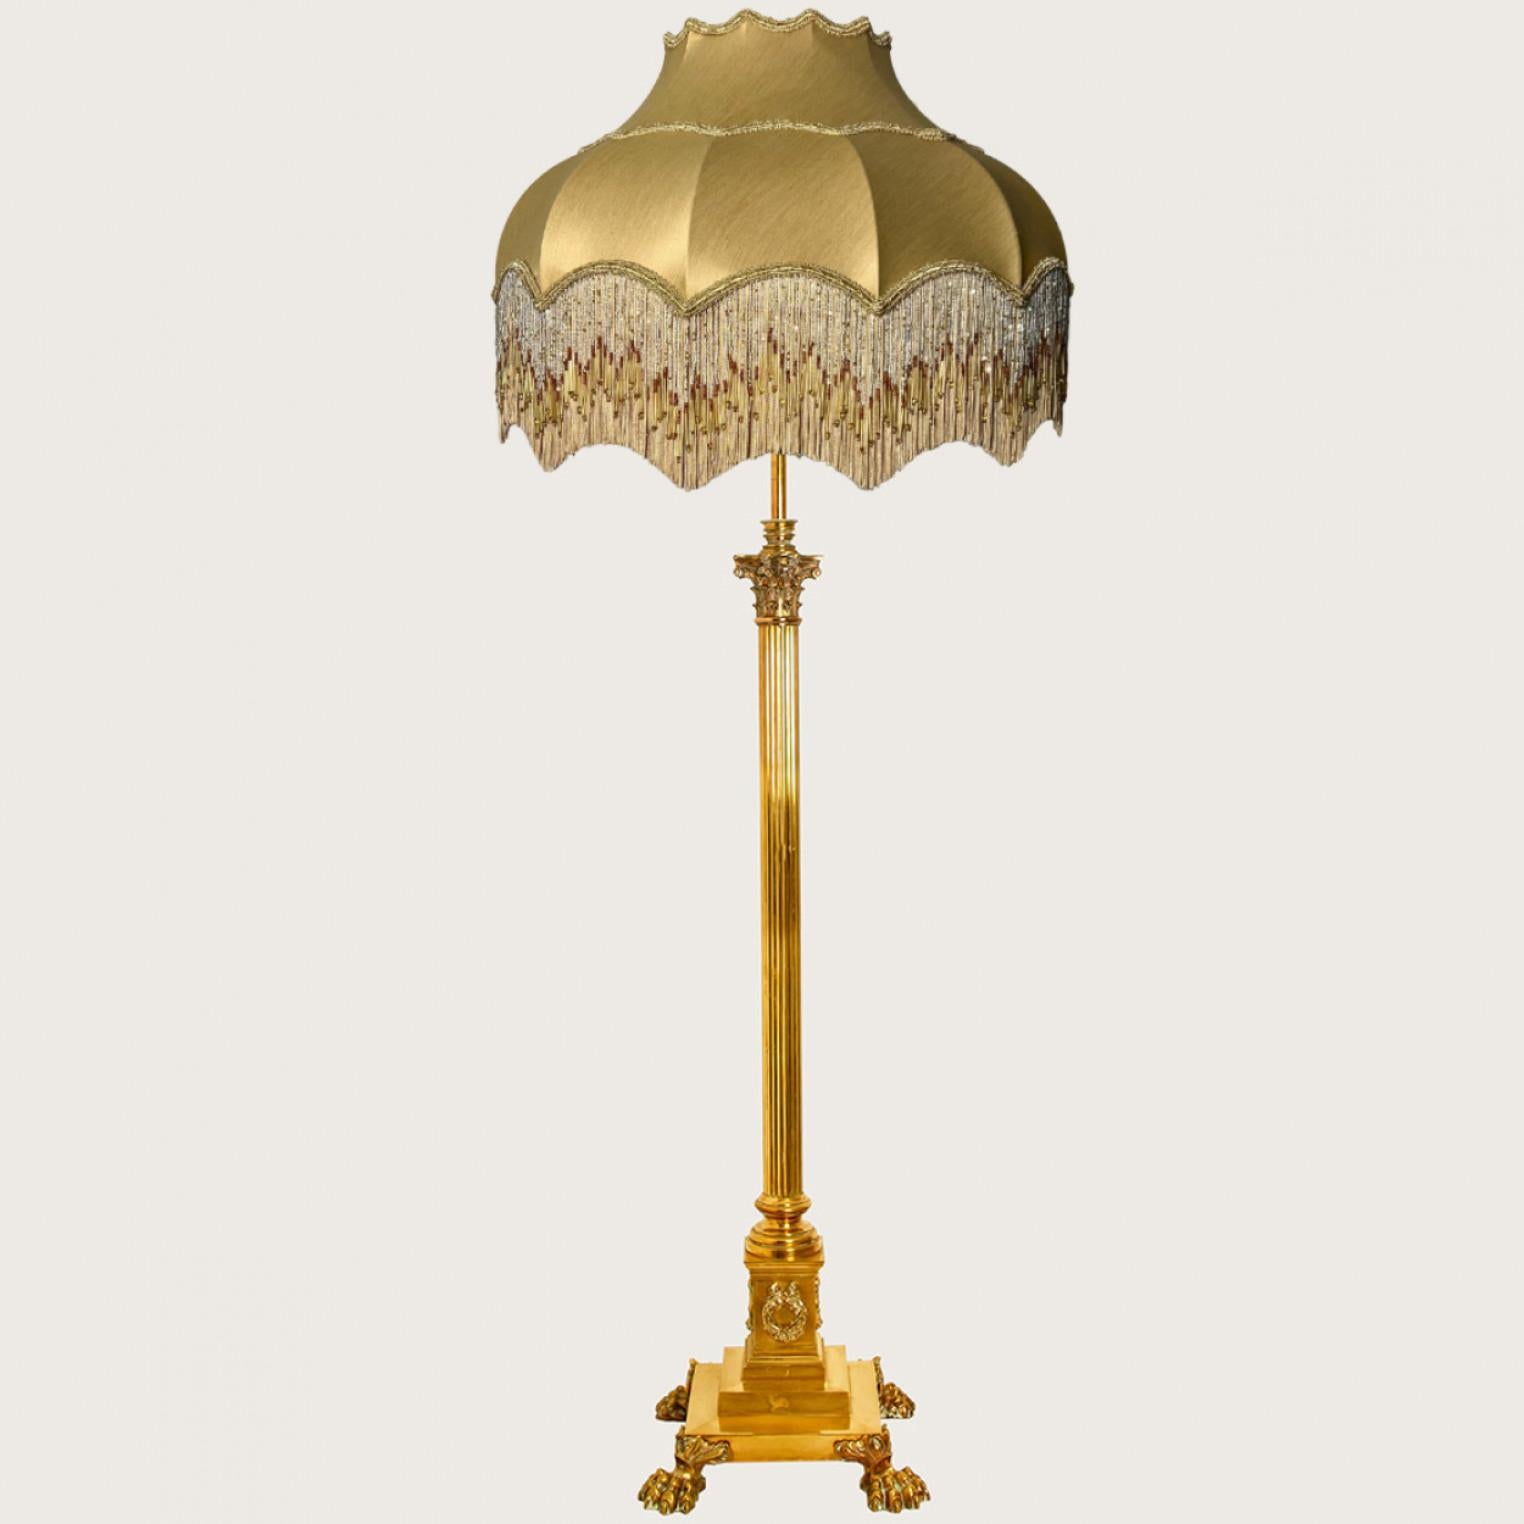 Lampadaire télescopique en laiton à colonne corinthienne, modèle Hinks, avec un magnifique abat-jour frangé fait à la main. Fabriqué en Angleterre, dans le style de James Hinks & Son en 1890.

La lampe est dotée d'un abat-jour festonné d'un or chaud